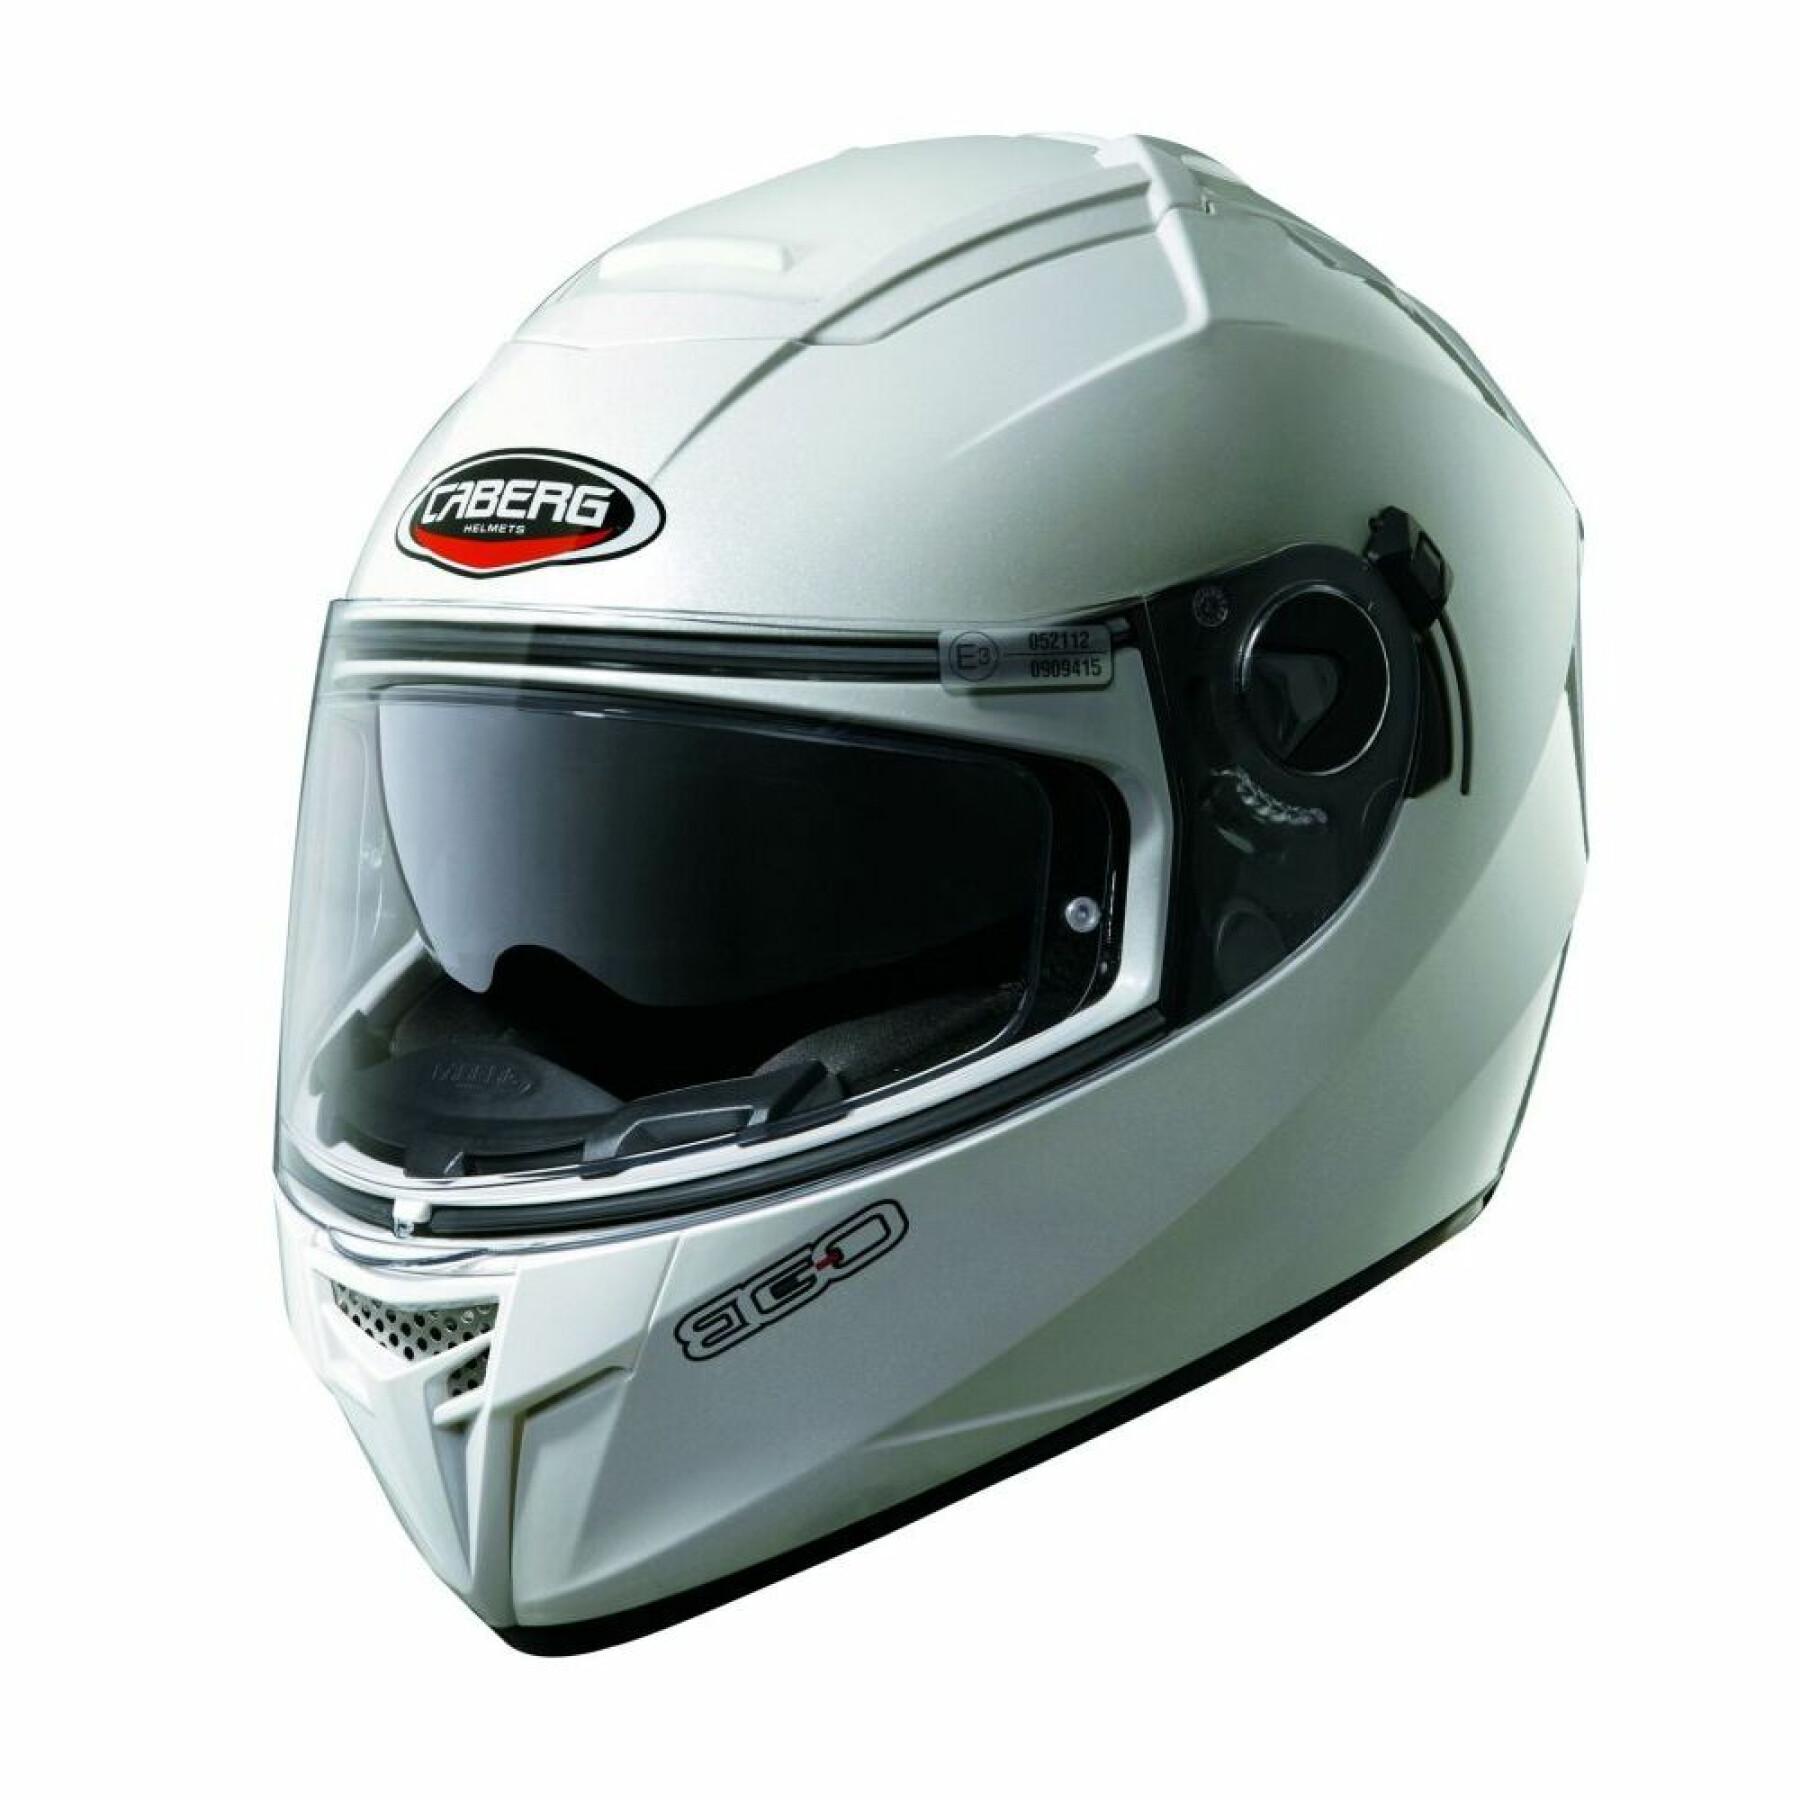 Full face motorcycle helmet Caberg ego metal